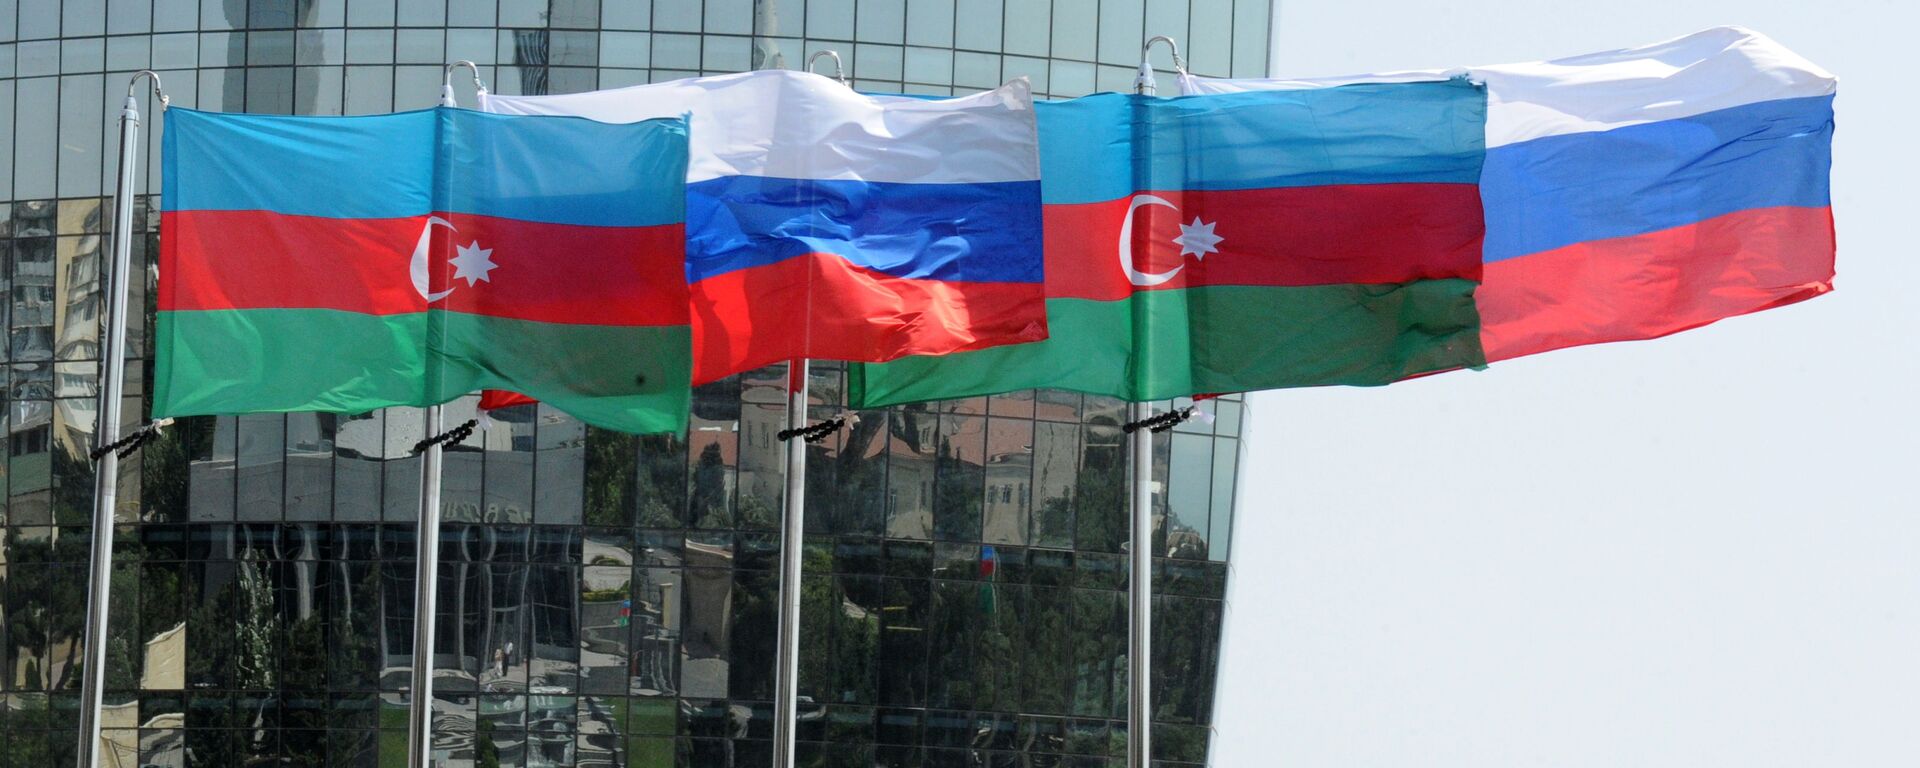 Национальные флаги России и Азербайджана на фоне фасада одной из башен Башни Пламени (Flame Towers) в Баку - Sputnik Азербайджан, 1920, 24.11.2021